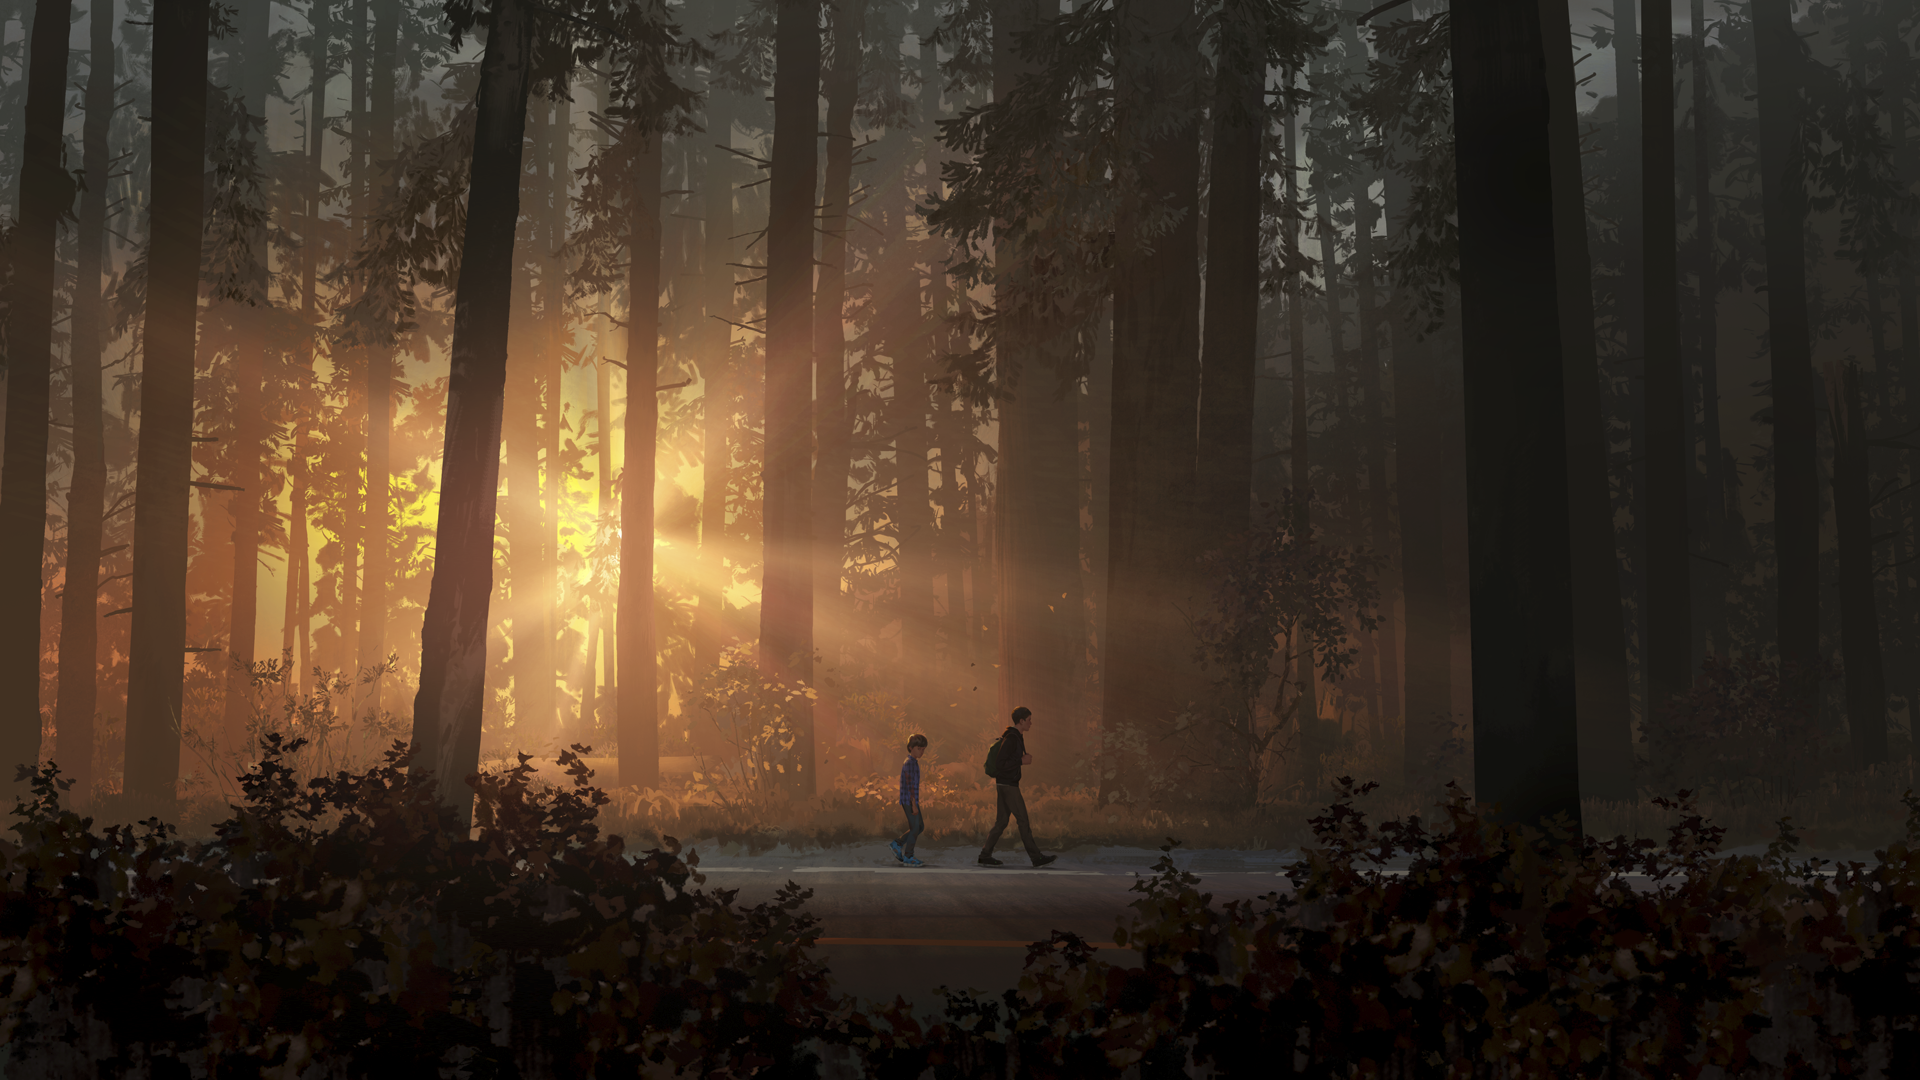 Life Is Strange 2 – helteillustrasjon – to gutter som går nedover en vei, opplyst av noen solstråler som skinner inn gjennom skogen